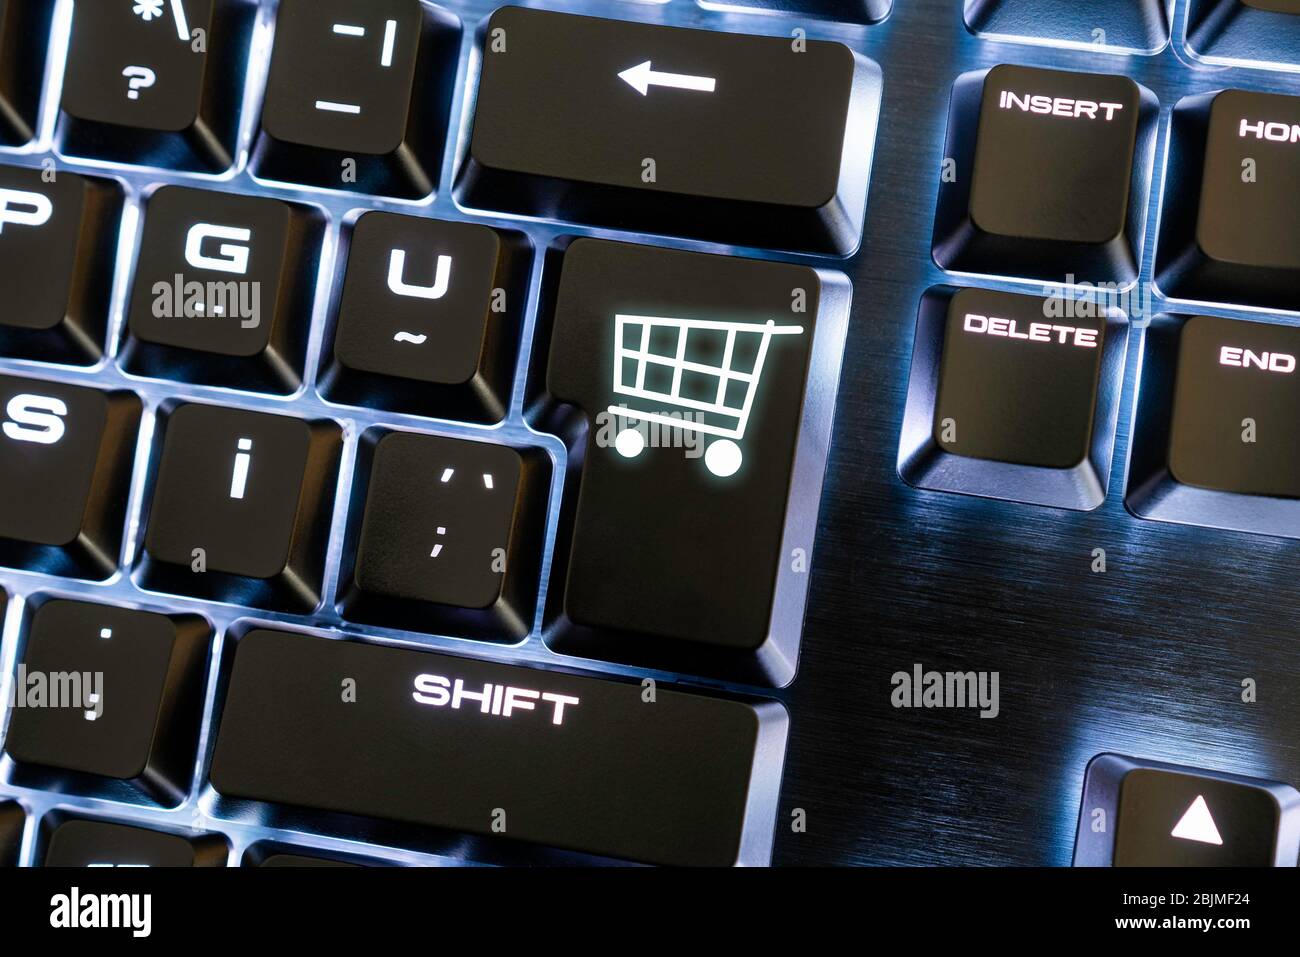 Vue détaillée du clavier pour un shopping en ligne en intérieur facile et confortable. Concept de commerce électronique virtuel Banque D'Images